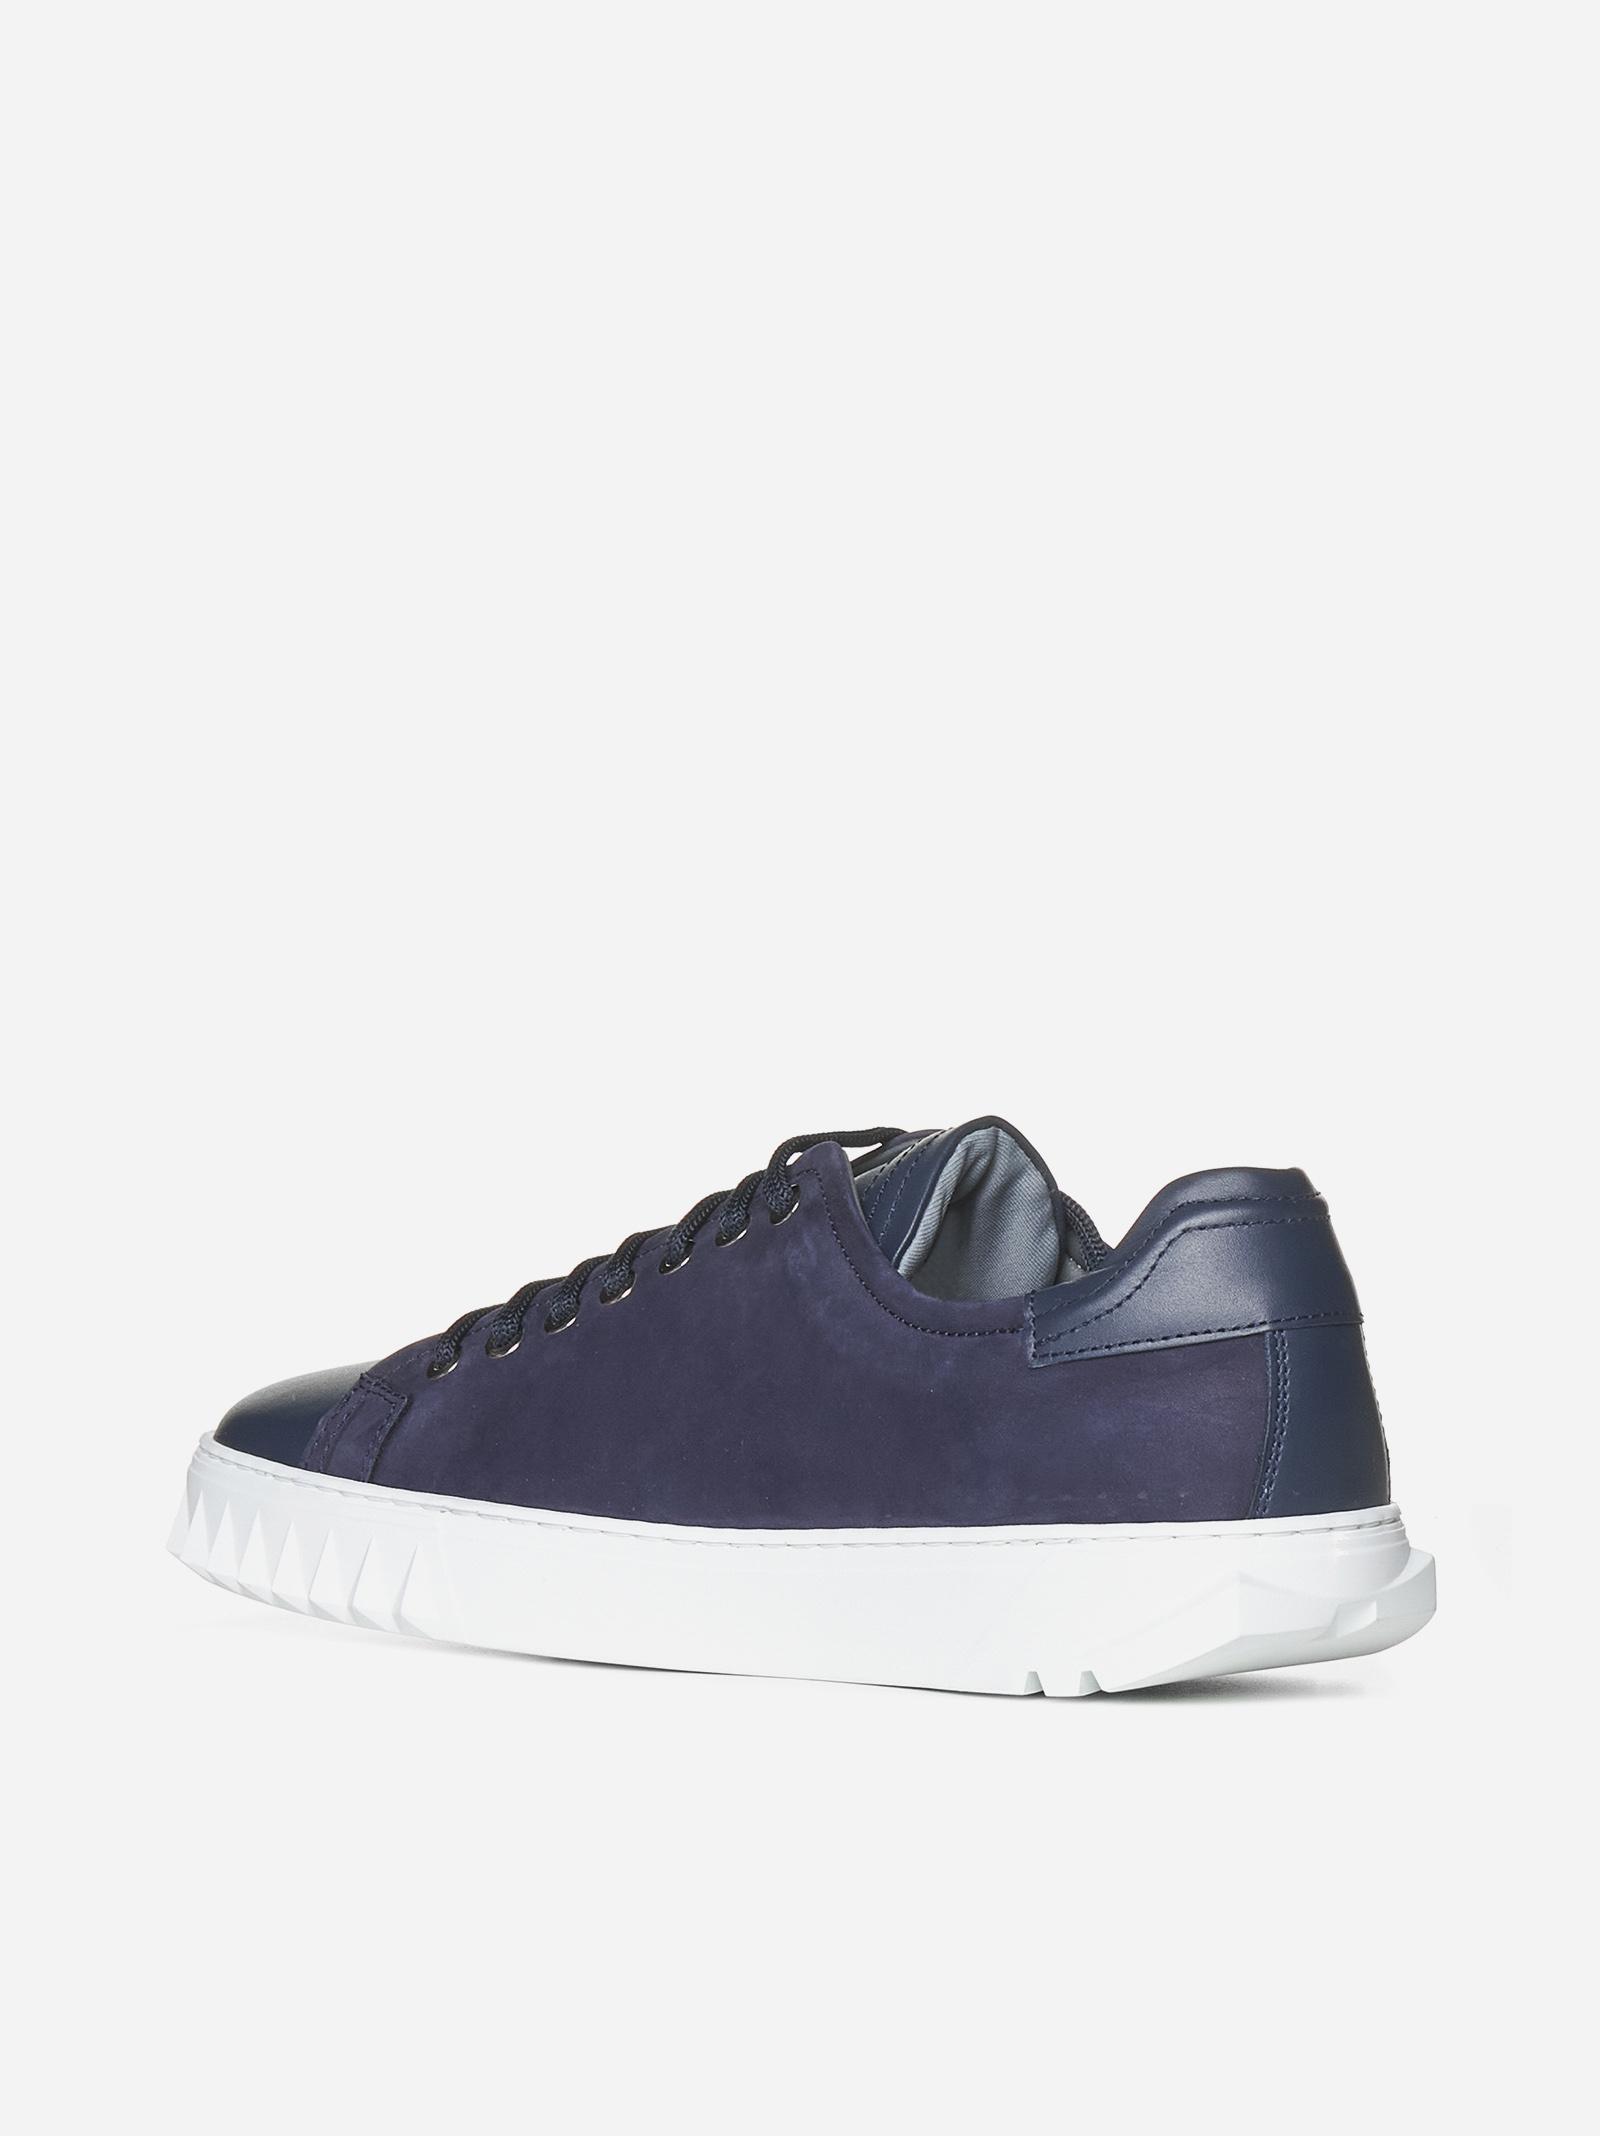 Ferragamo Cube Leather Sneakers in Blue for Men | Lyst